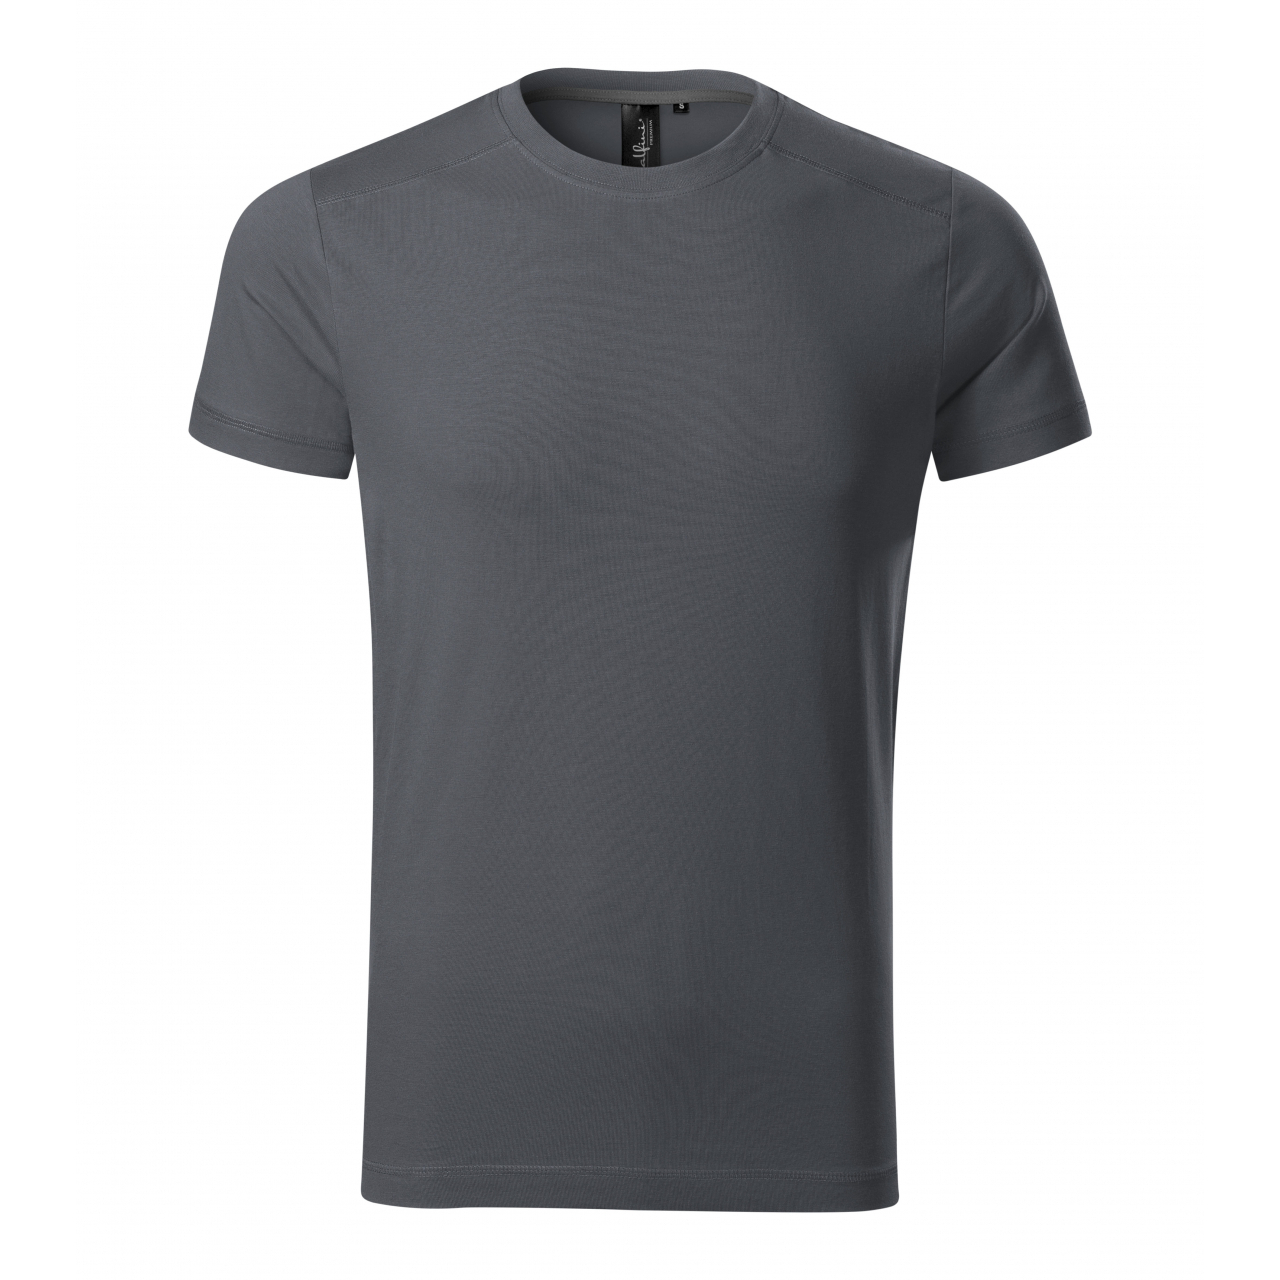 Tričko pánské Malfini Action - tmavě šedé, XL